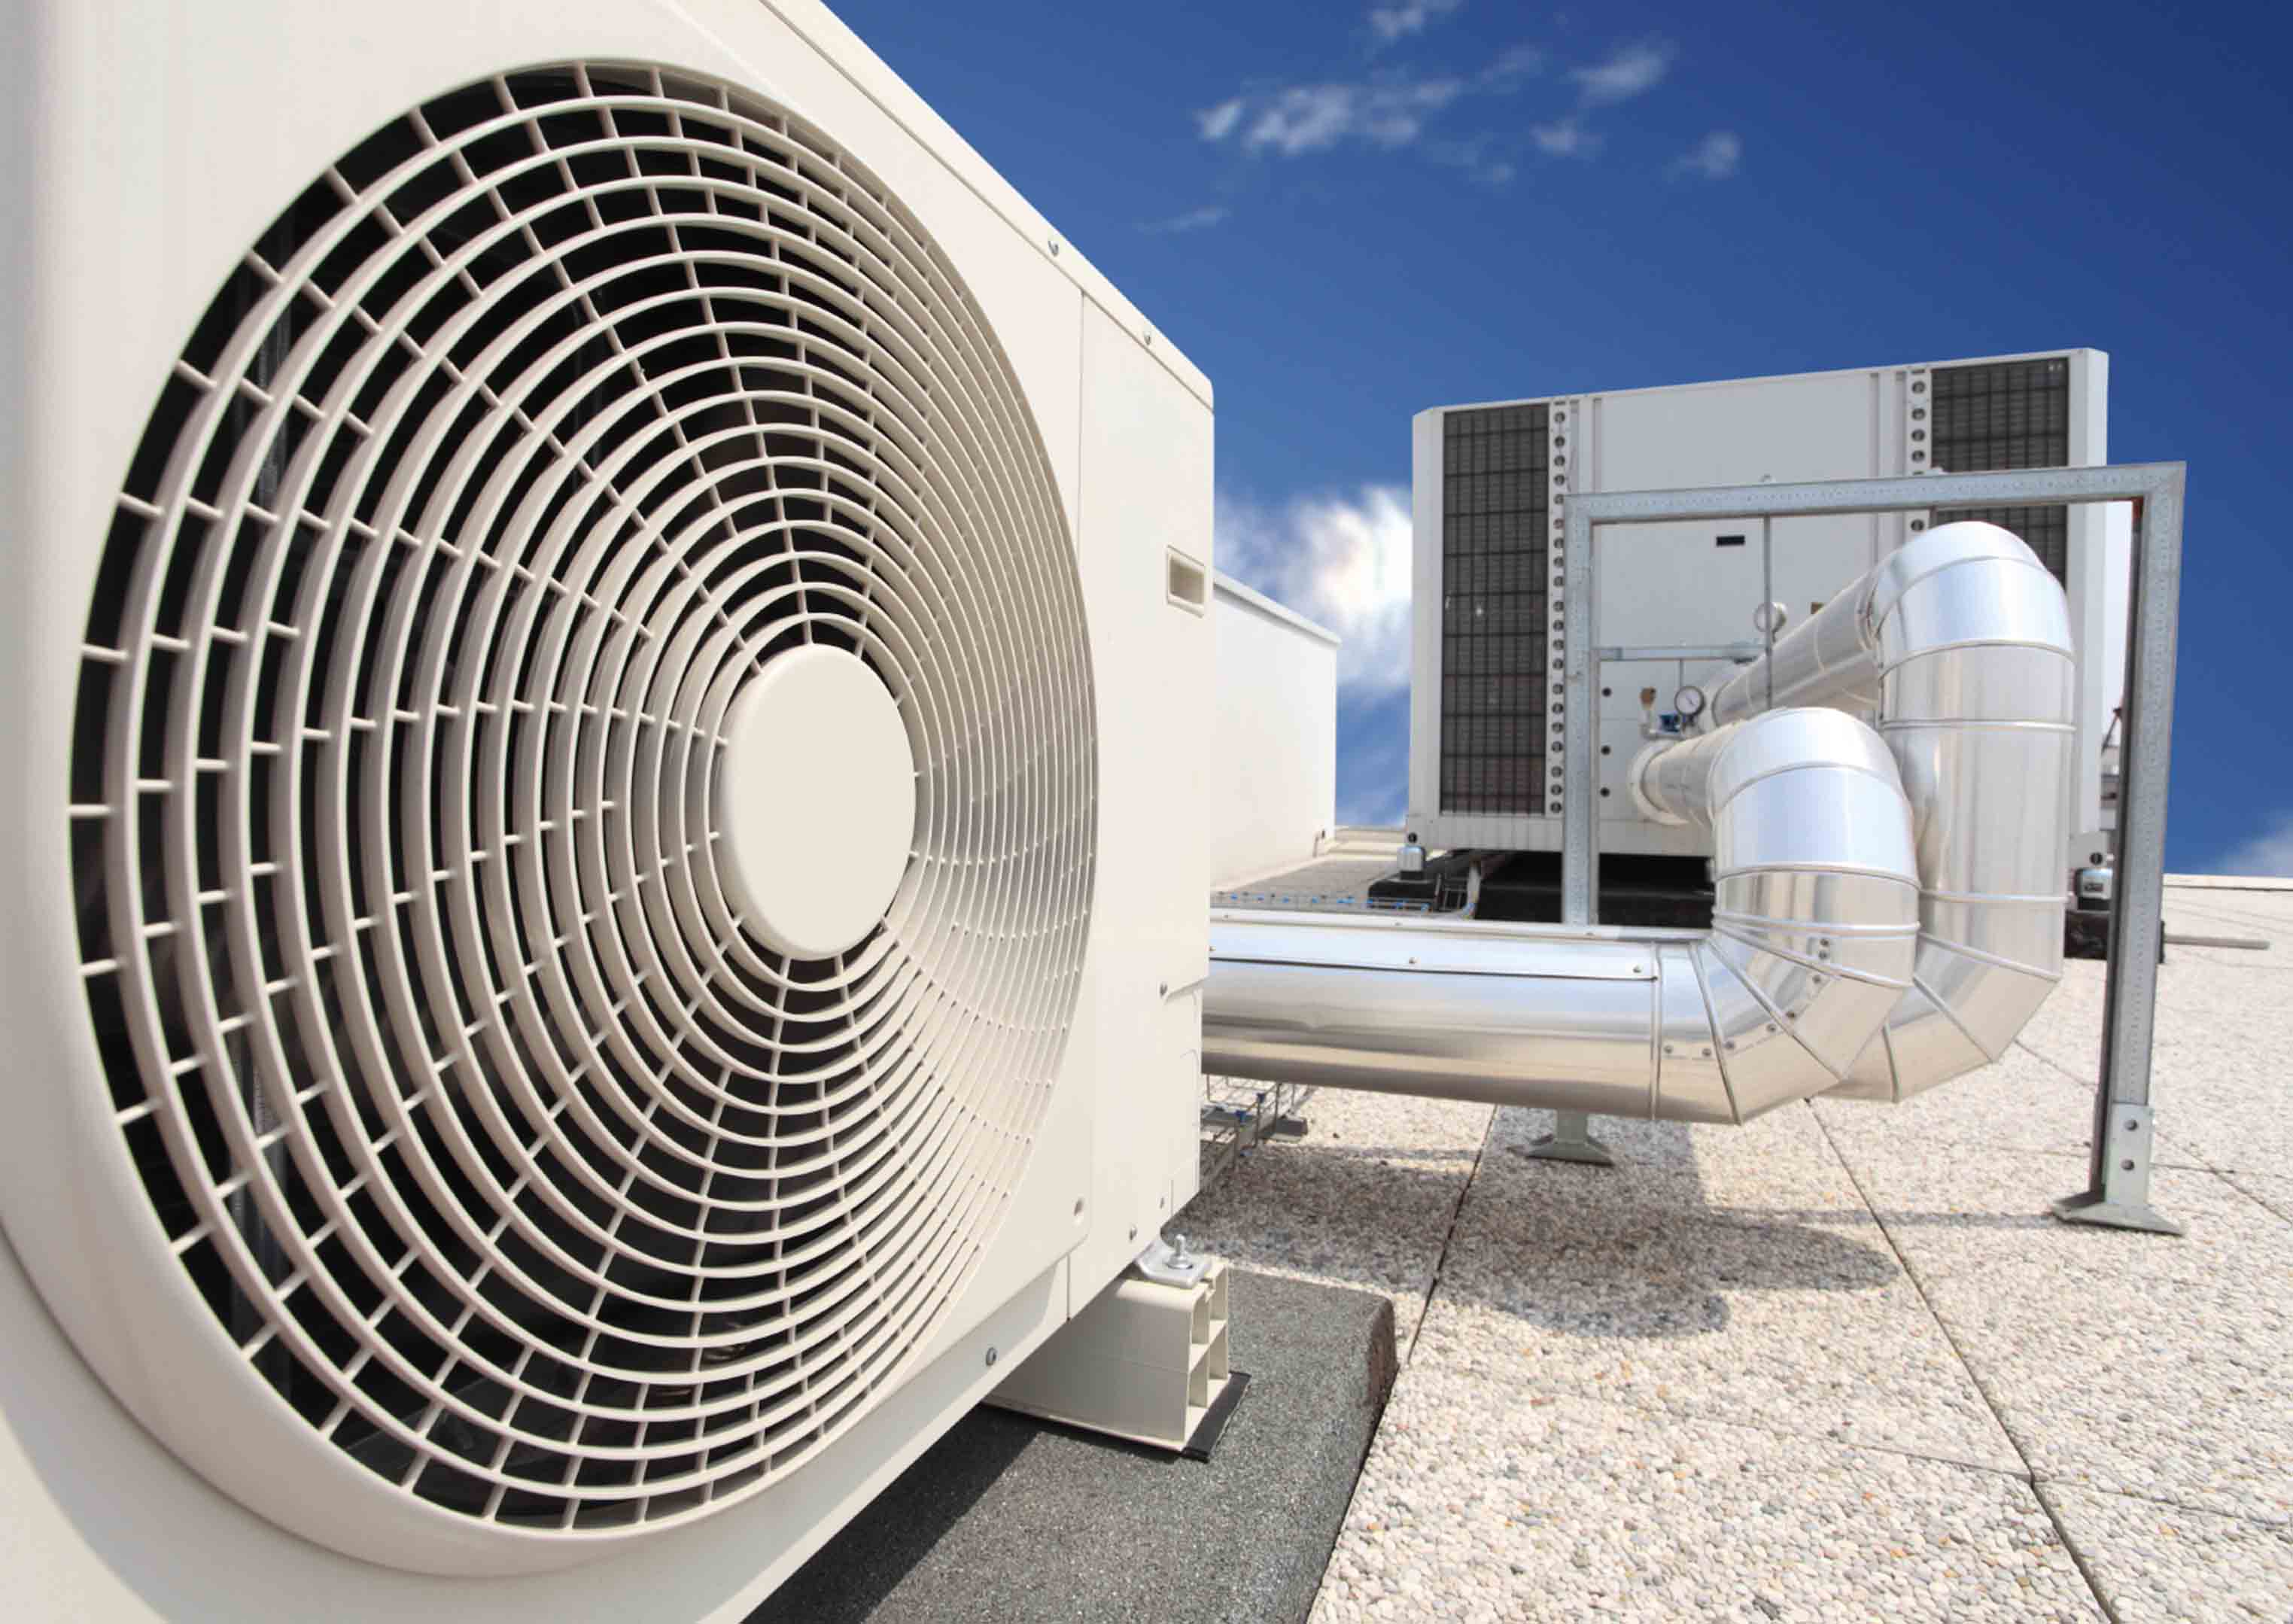 Вентиляция промышленных объектов. HVAC система вентиляции и кондиционирования. Система вентиляции Air Ventilation. Промышленный кондиционеры Carrier. Внешний блок приточно-вытяжной вентиляции.